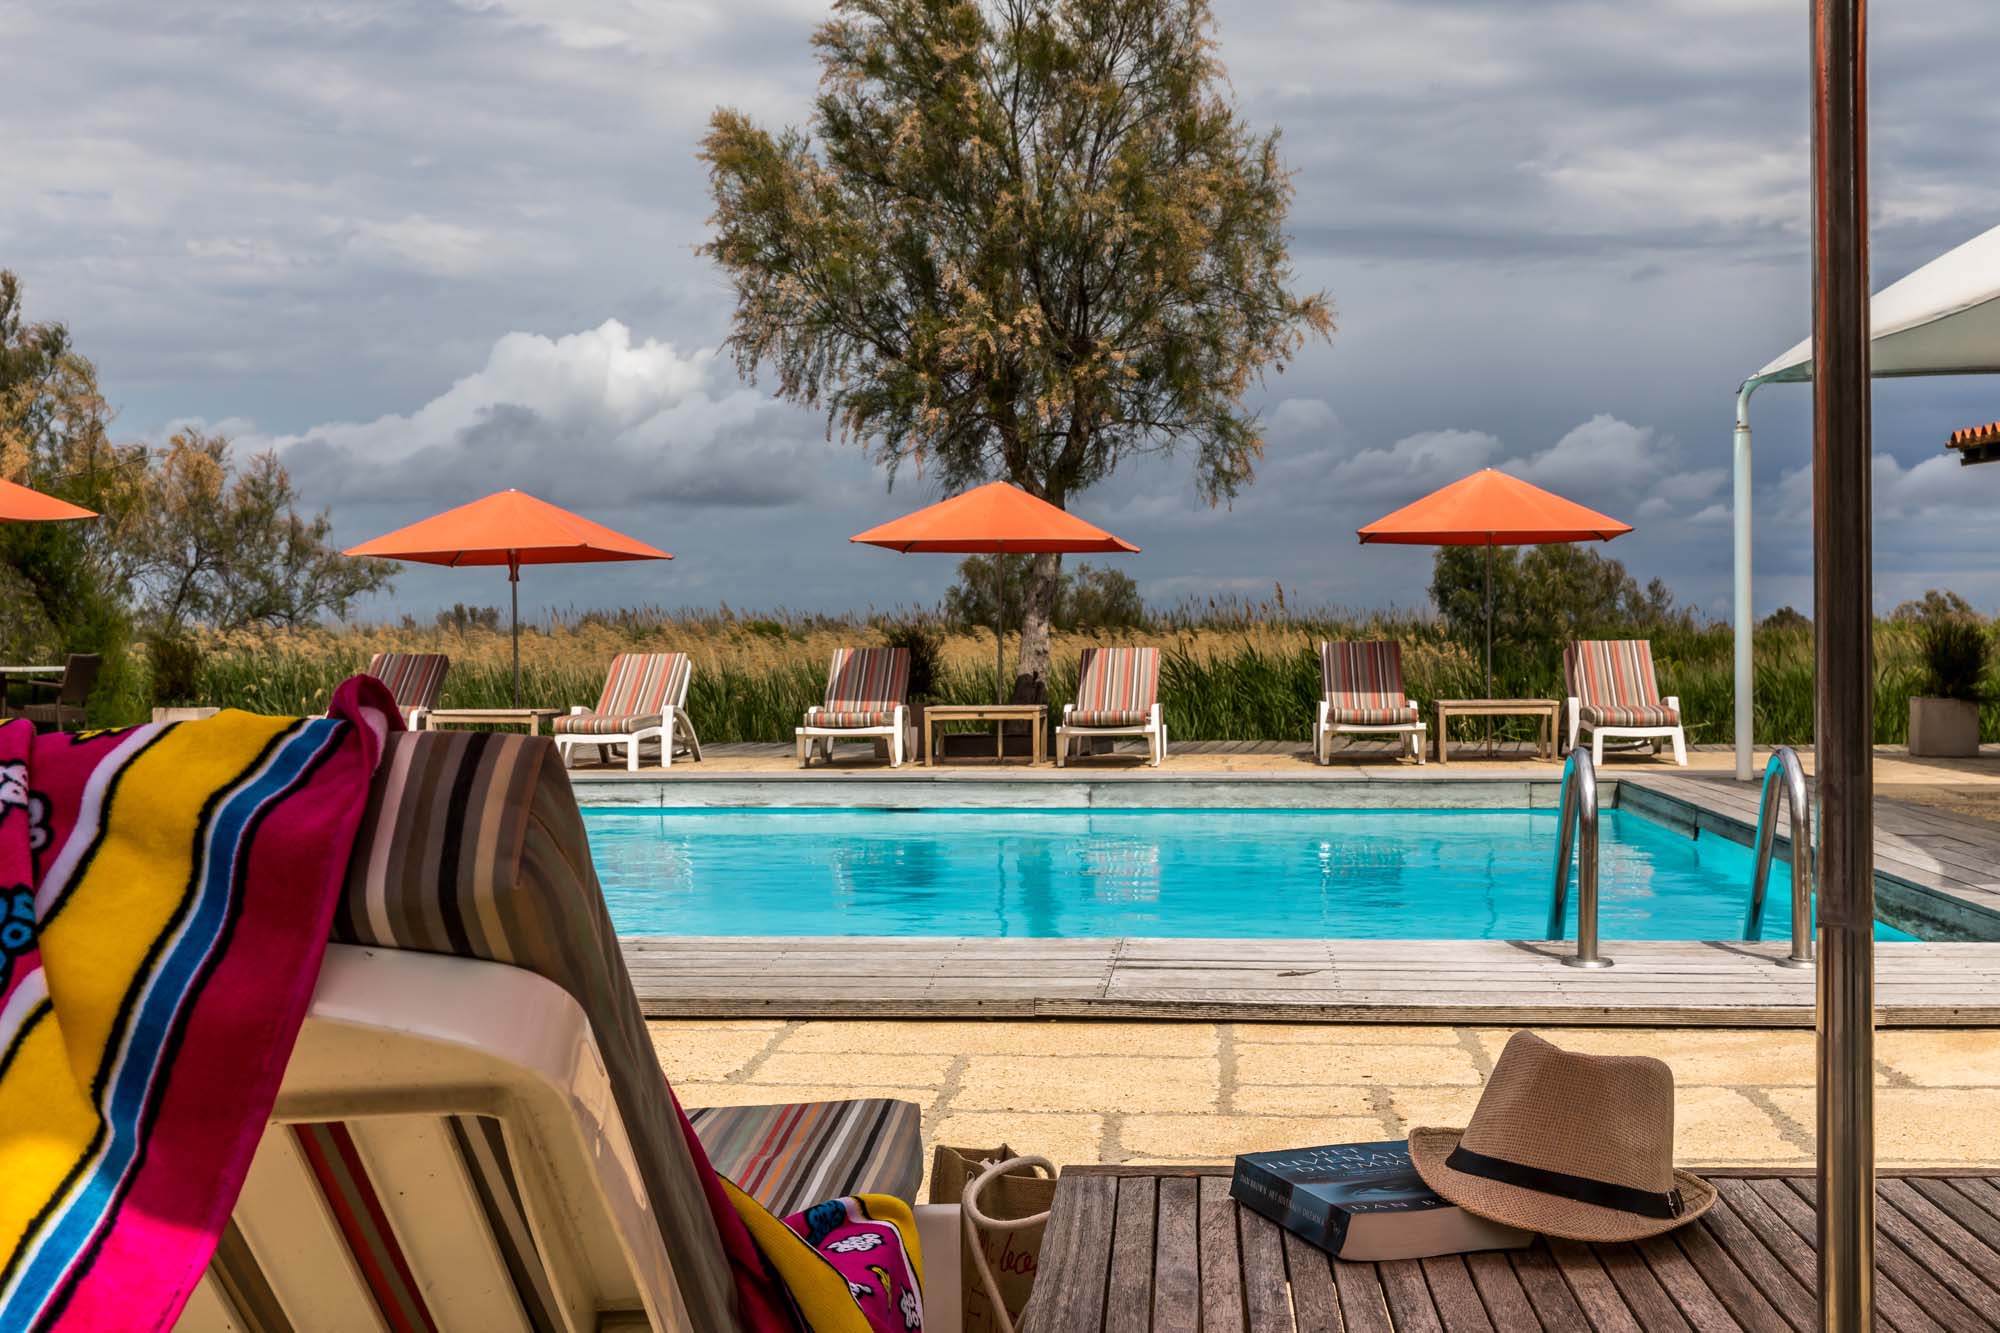 Séminaire au soleil hôtel pour un séminaire en Provence incentive en Camargue événement dans le sud séminaire dans un hôtel 4 étoiles